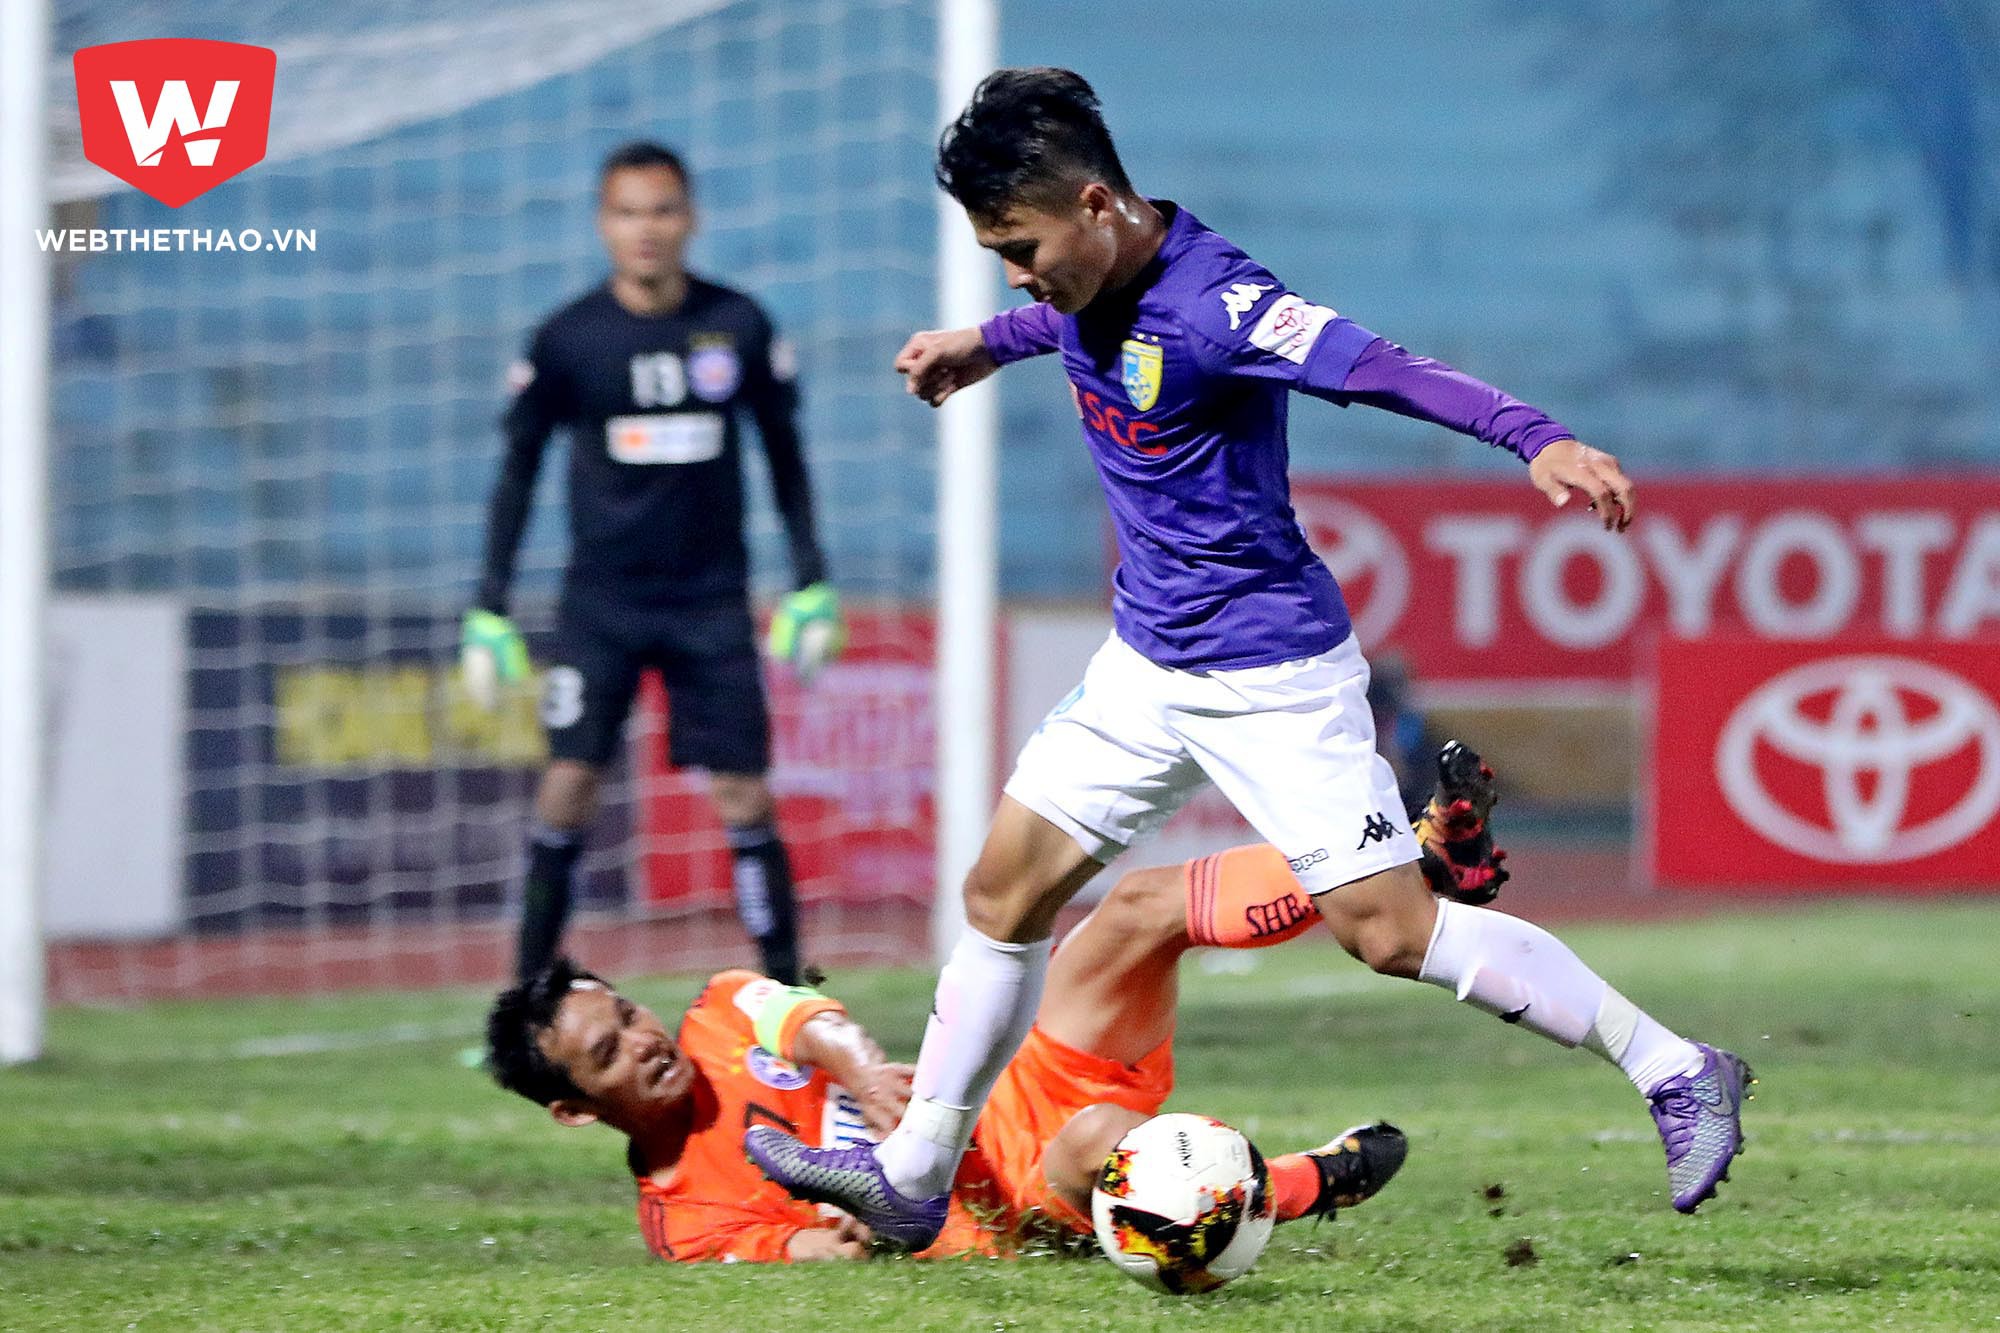 Hải ''con'' chơi rất tốt nhưng chỉ vậy là không đủ để Hà Nội FC giữ 3 điểm ở lại Hàng Đẫy. Ảnh: Hải Đăng.